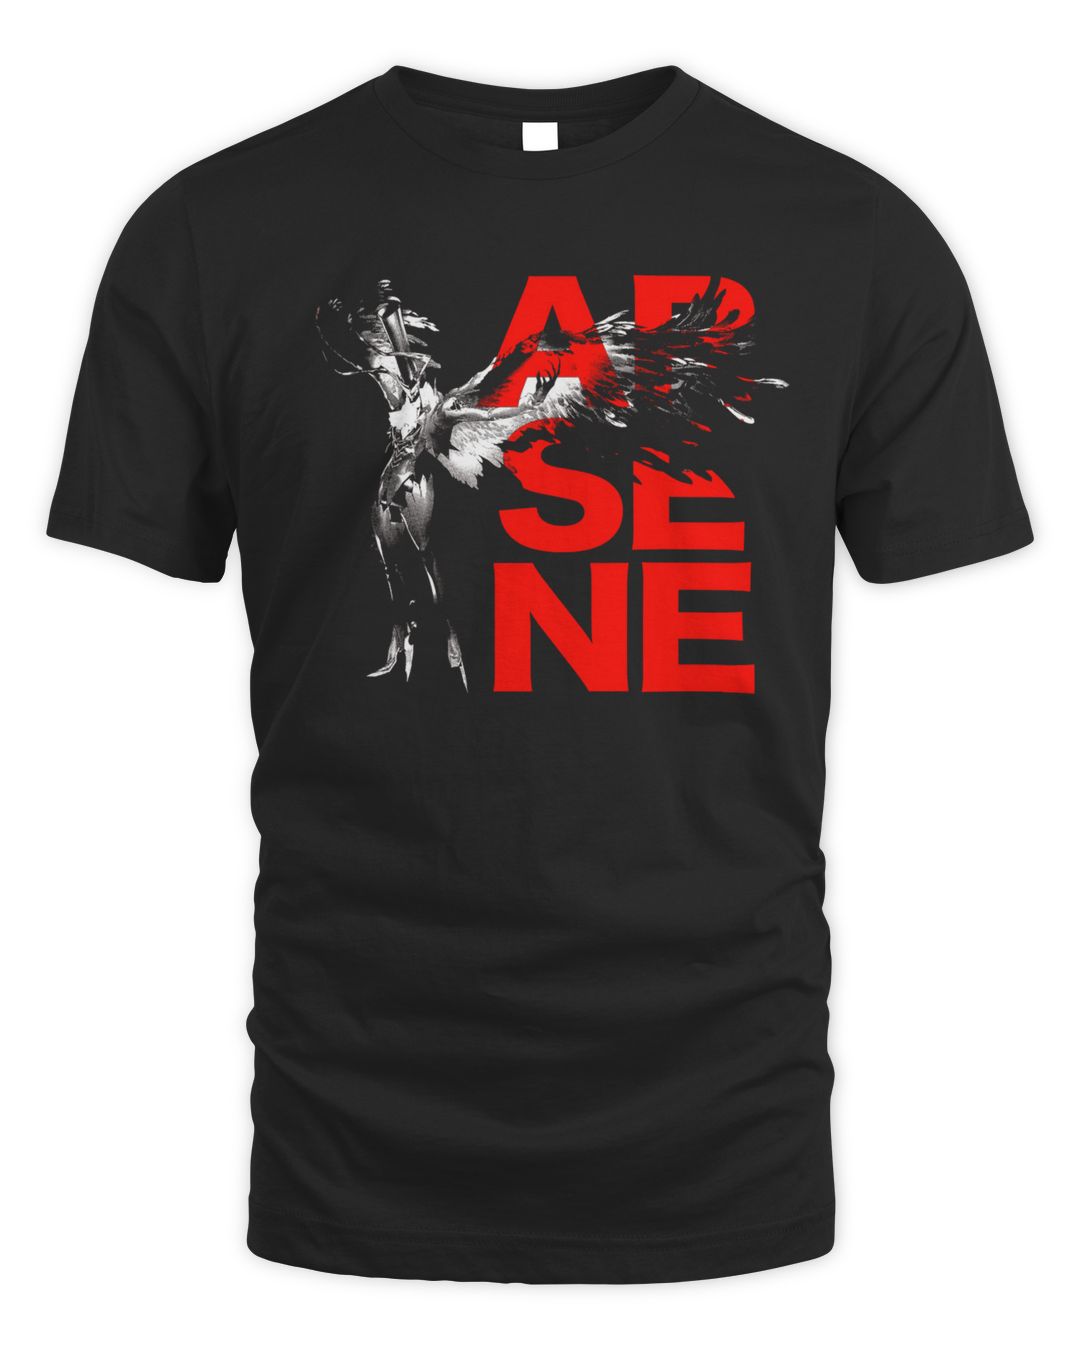 Persona 5 Merch Arsene Shirt